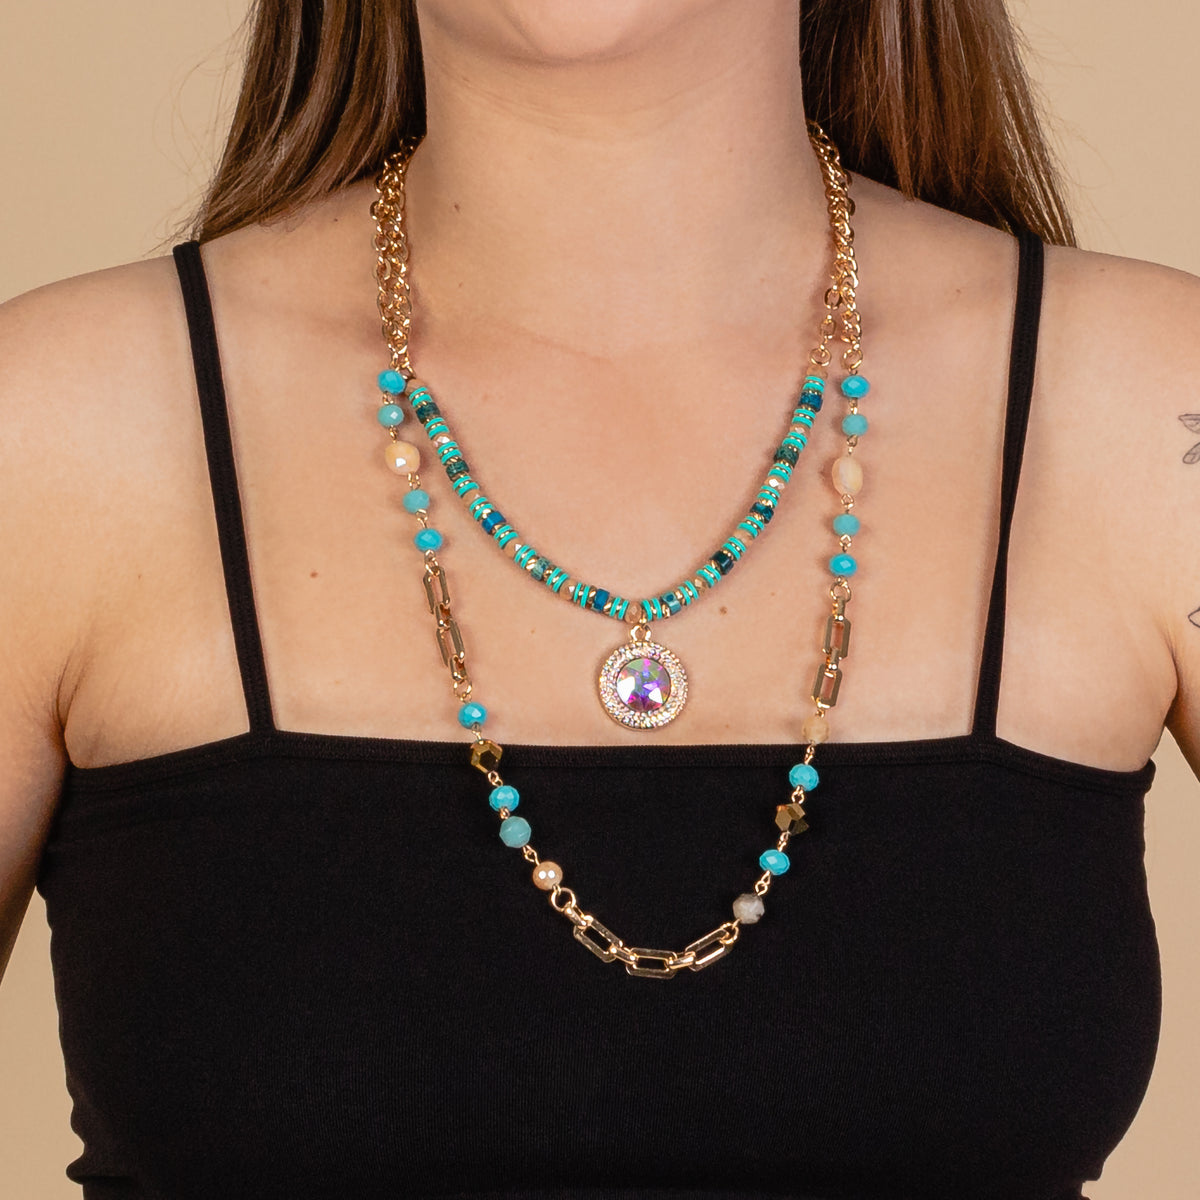 72938 - Layered Rhinestone Necklace - Turquoise